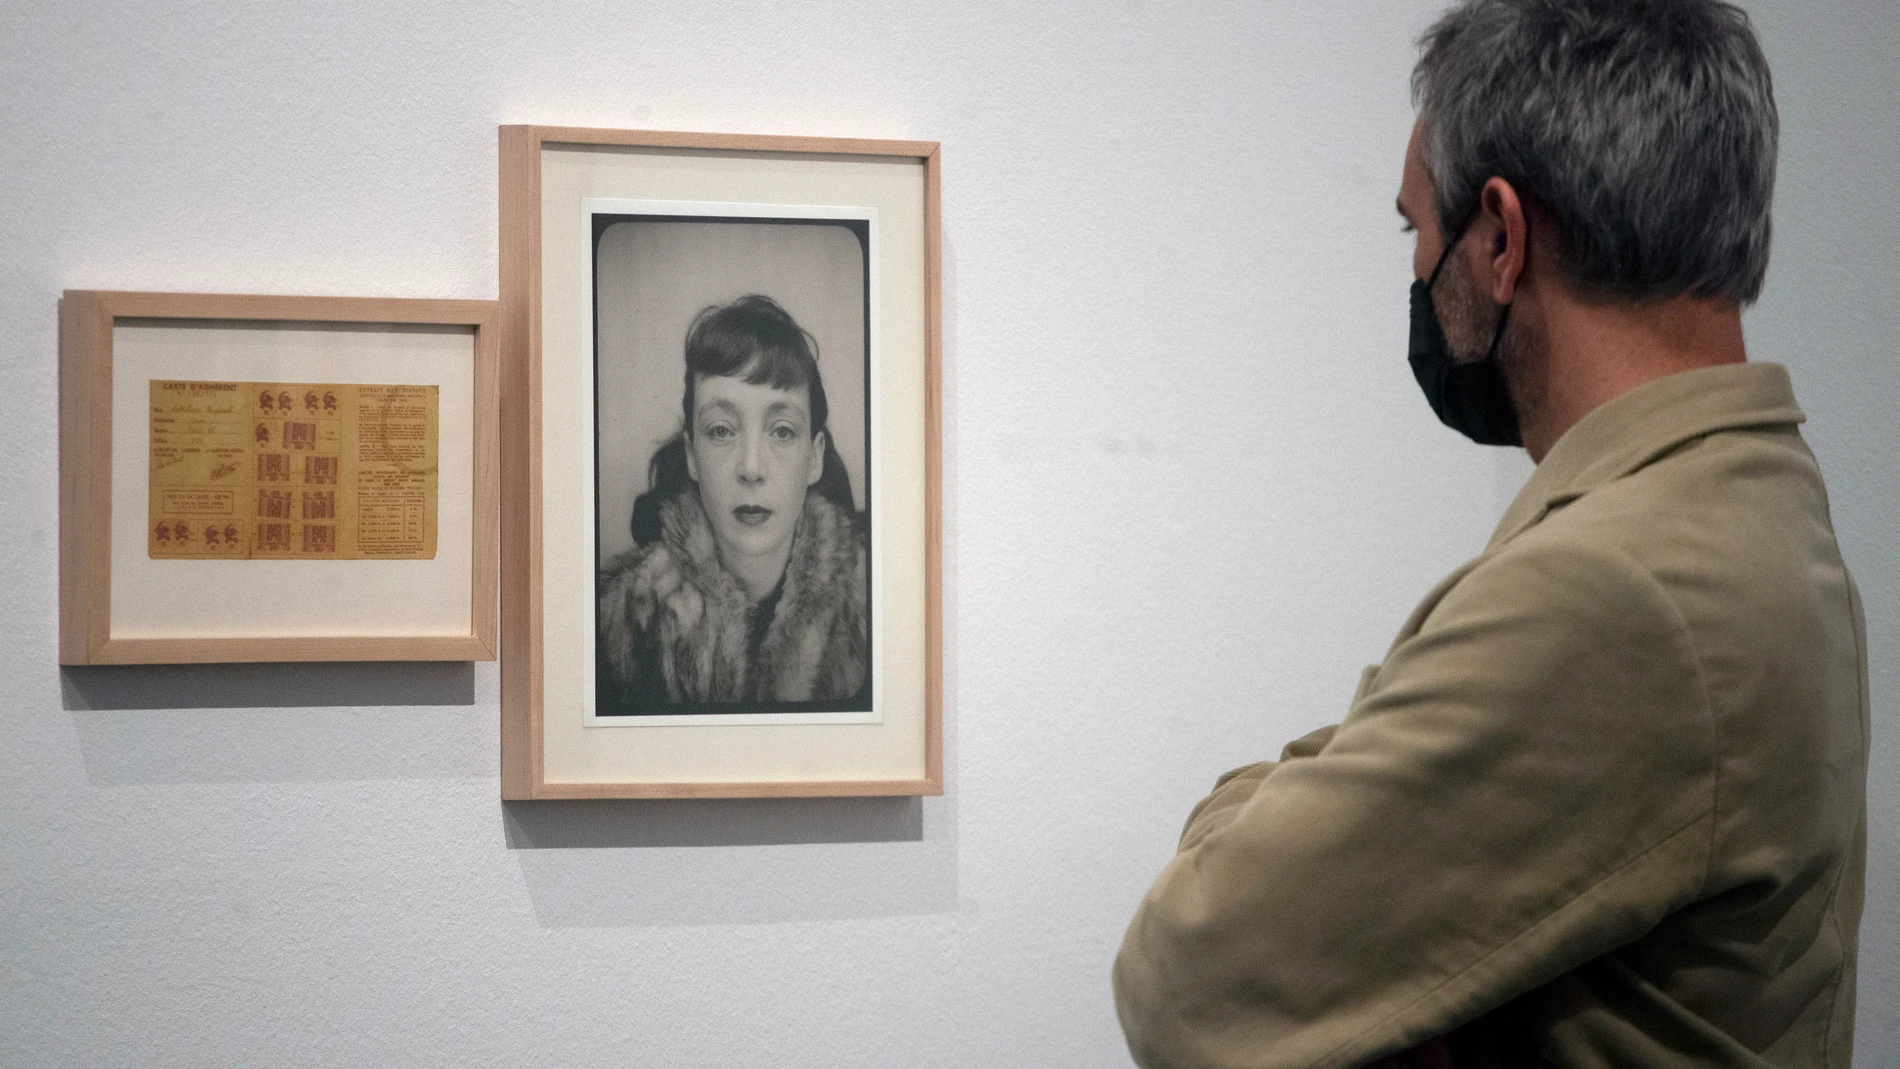 Aspecto de la exposición "Marguerite Duras"en La Virreina Centre de la Imatge